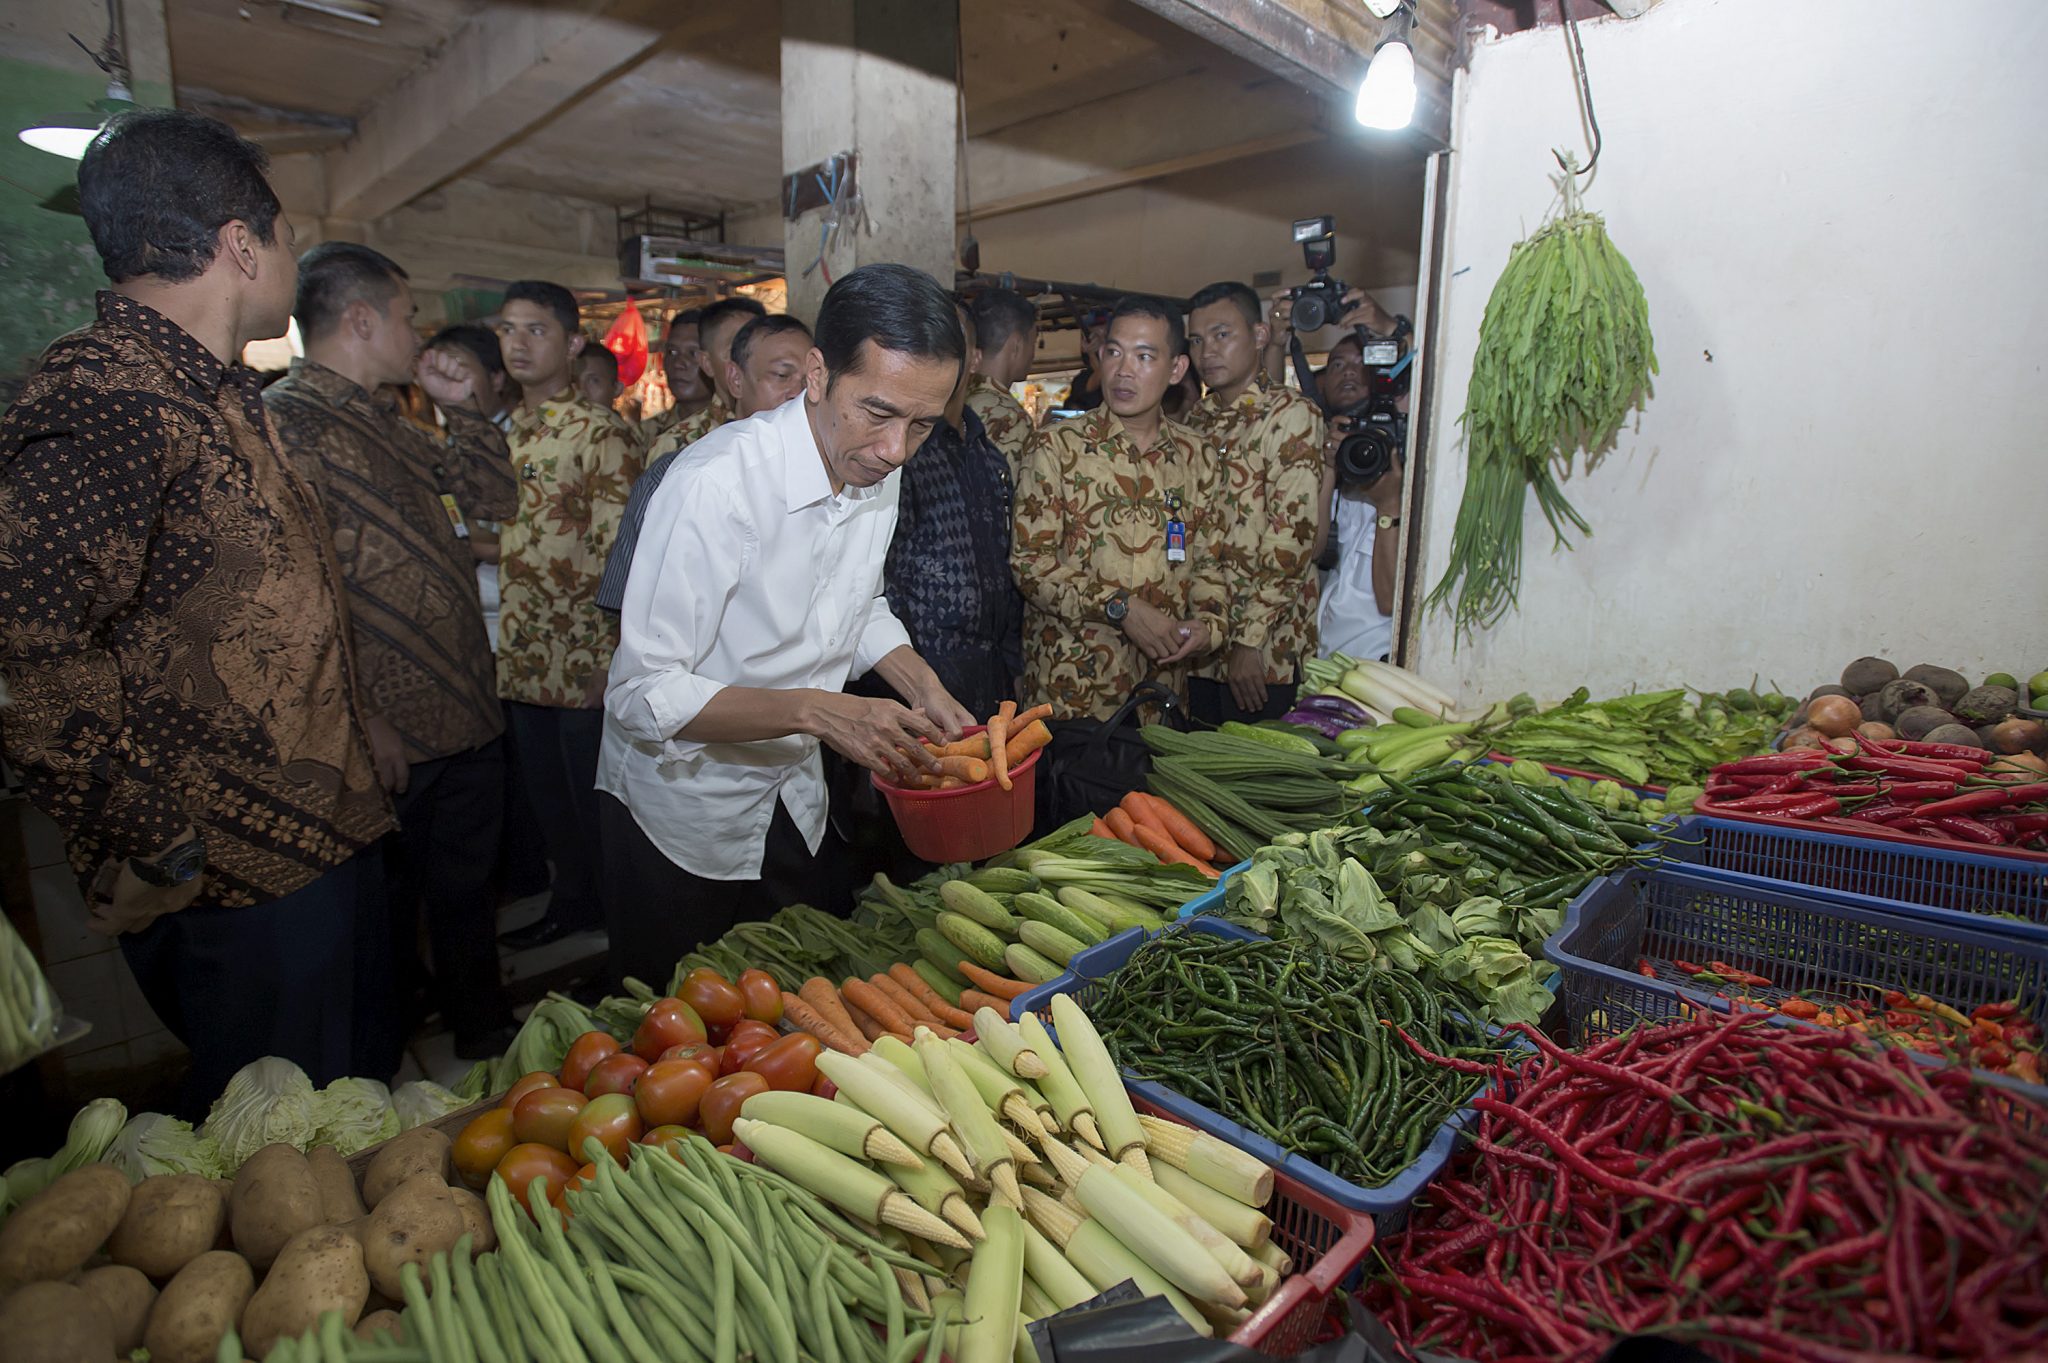 Mengatasi krisis pangan global adalah tugas besar lainnya untuk KTT G20 Indonesia